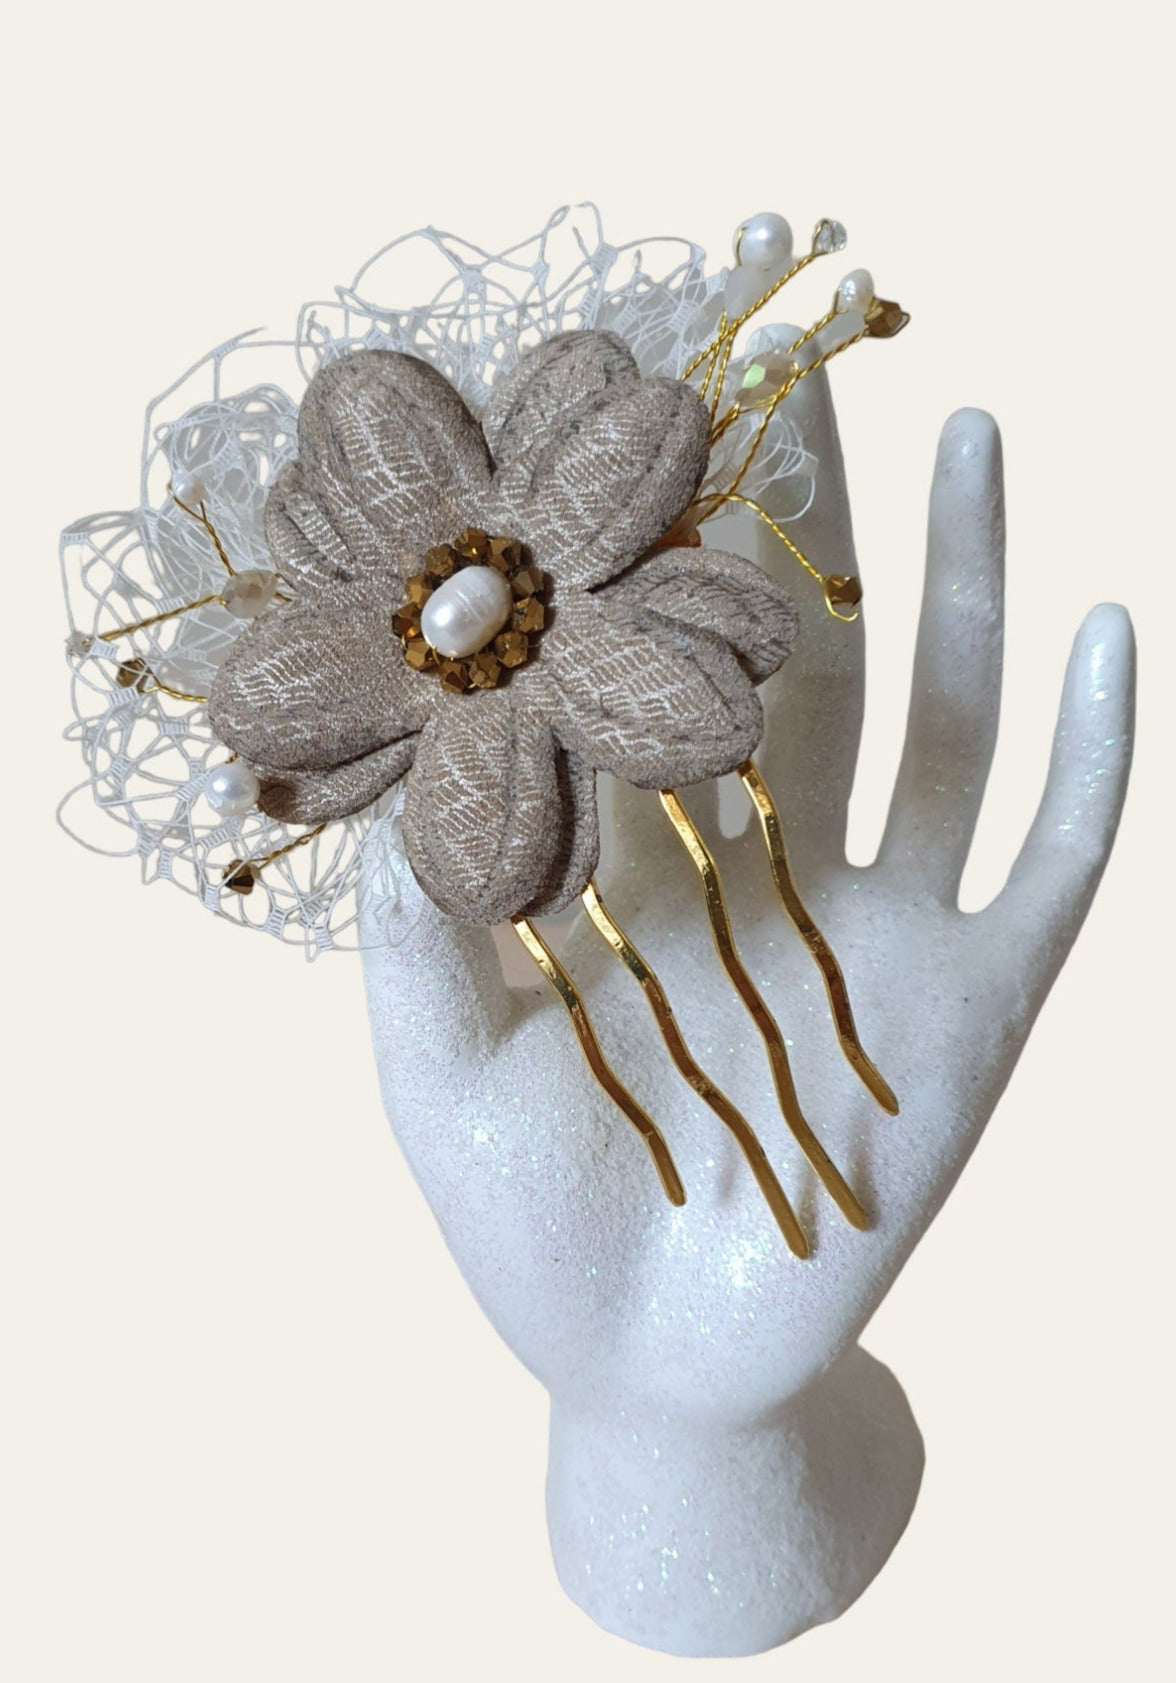 Peineta de novia hecha a mano con flor de cuero, Elegante y única para ocasiones especiales, complementos para el cabello